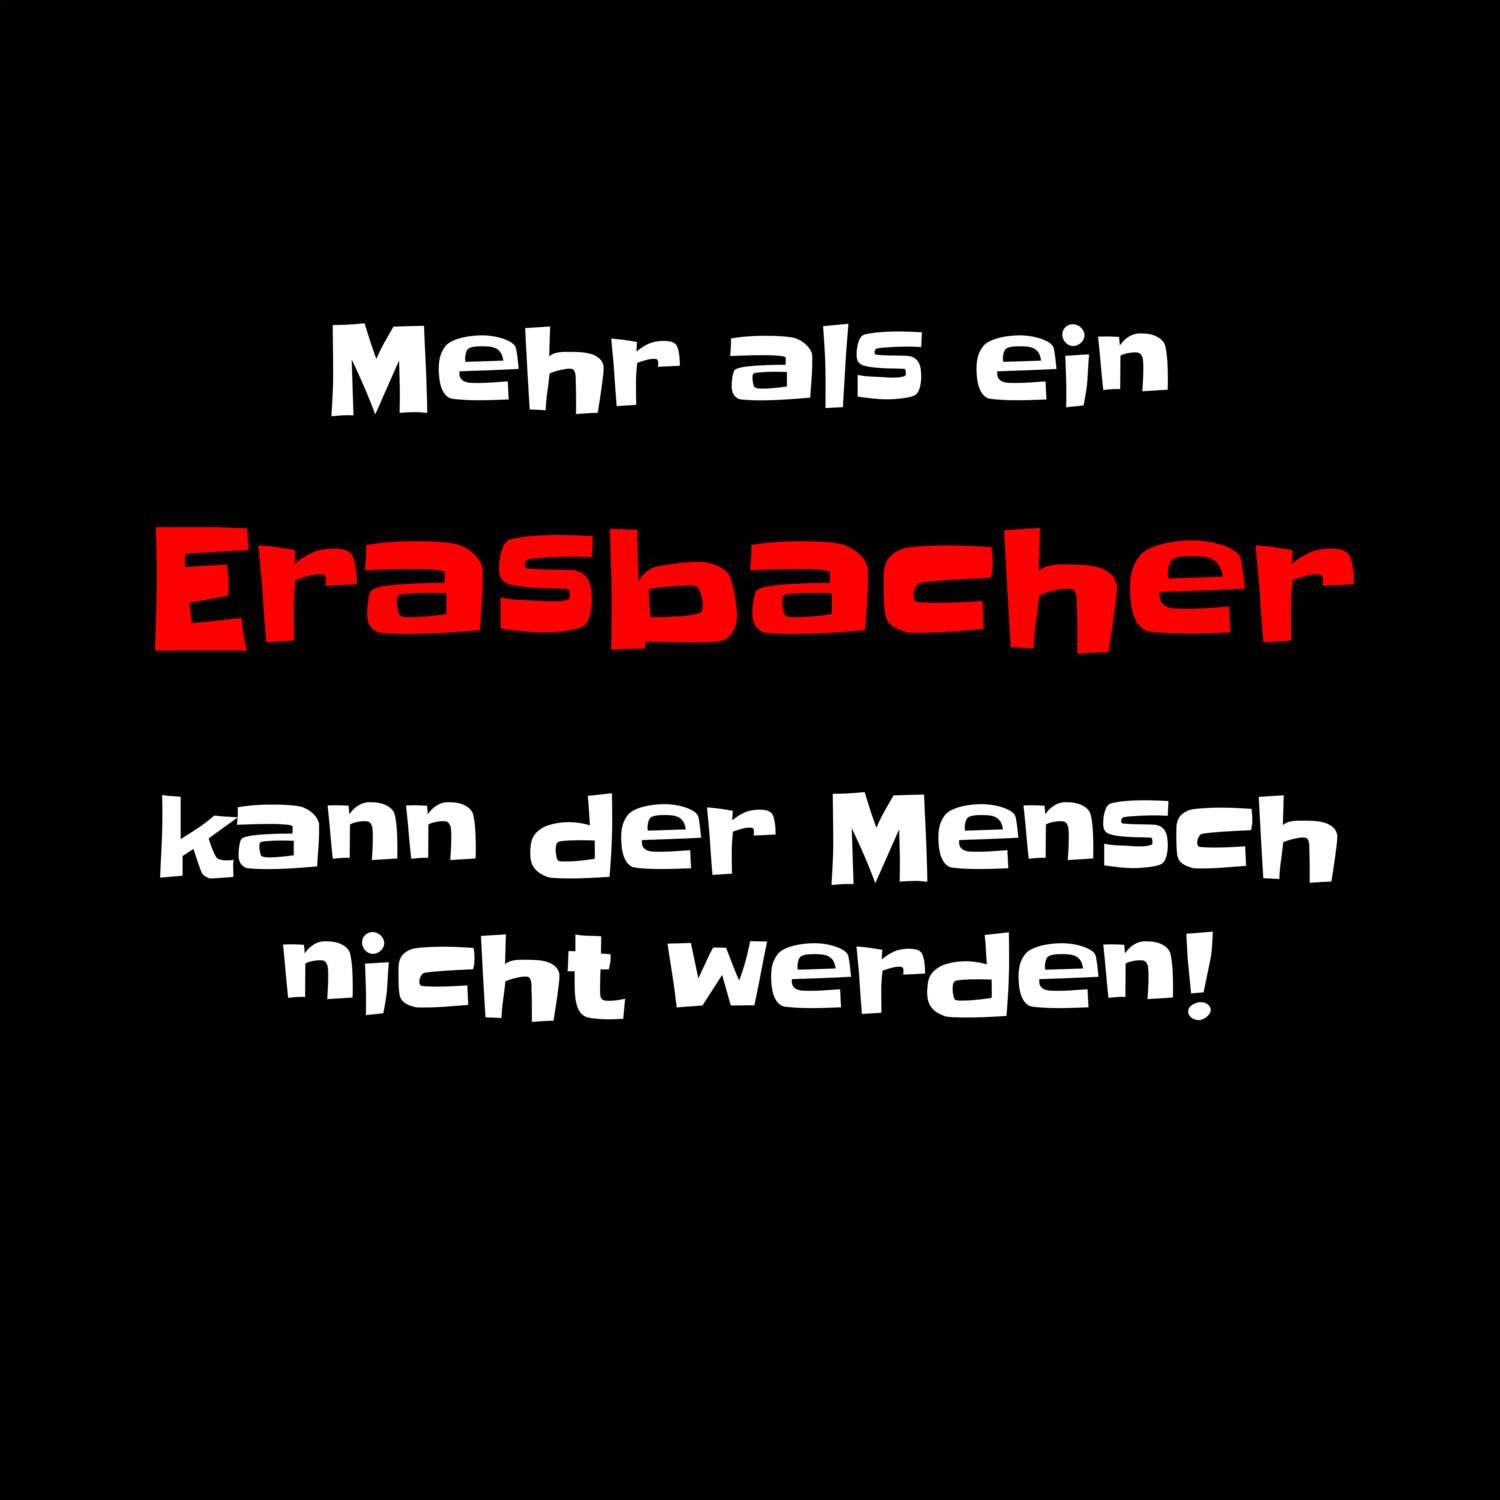 Erasbach T-Shirt »Mehr als ein«